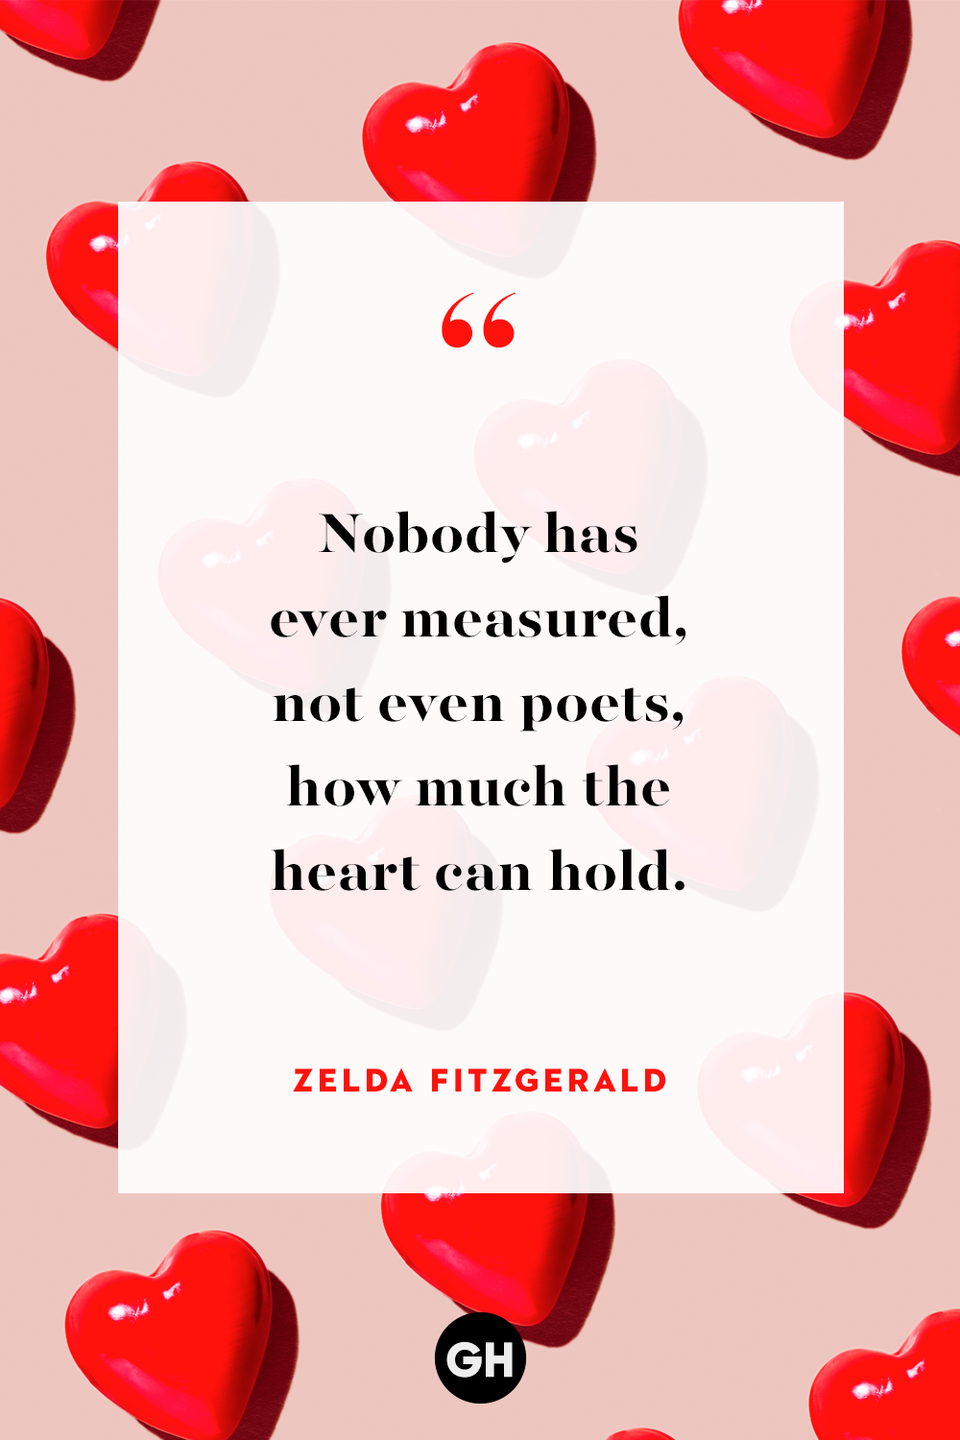 37) Zelda Fitzgerald